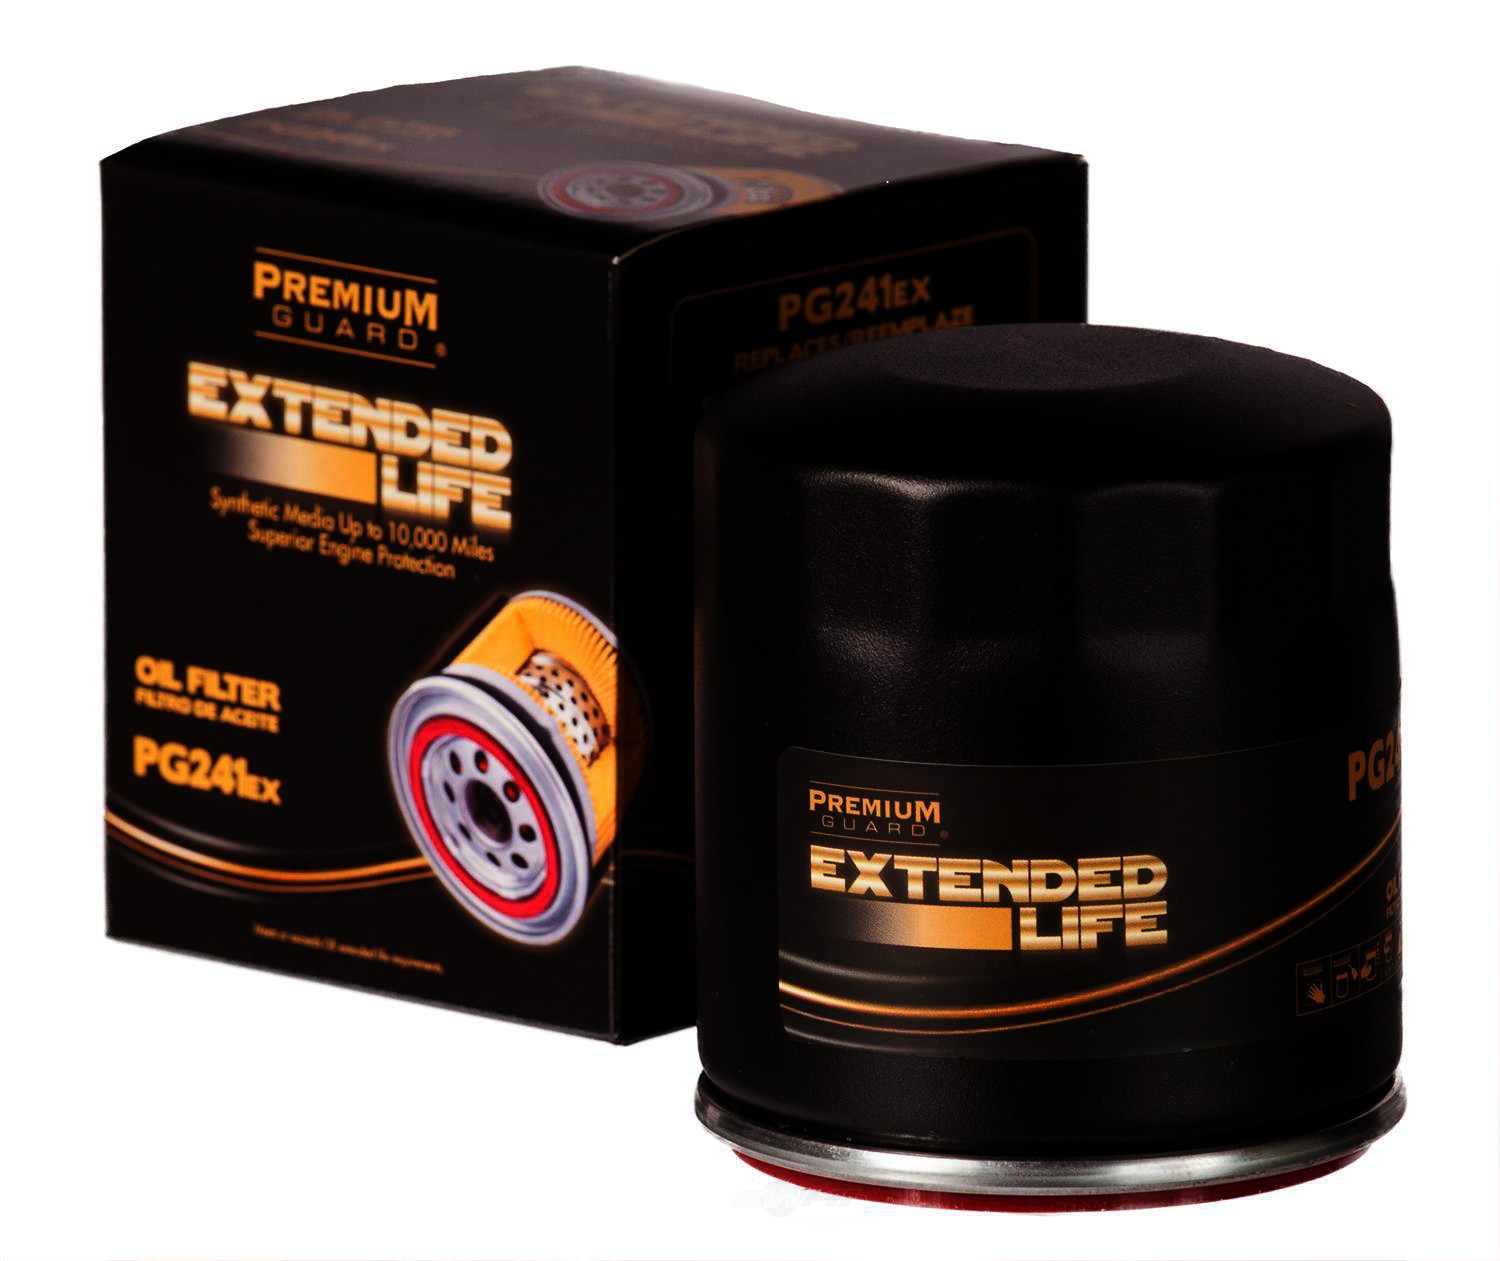 PGI EXTENDED LIFE - Premium Guard Extended Life Engine Oil Filter - PGI PG241EX